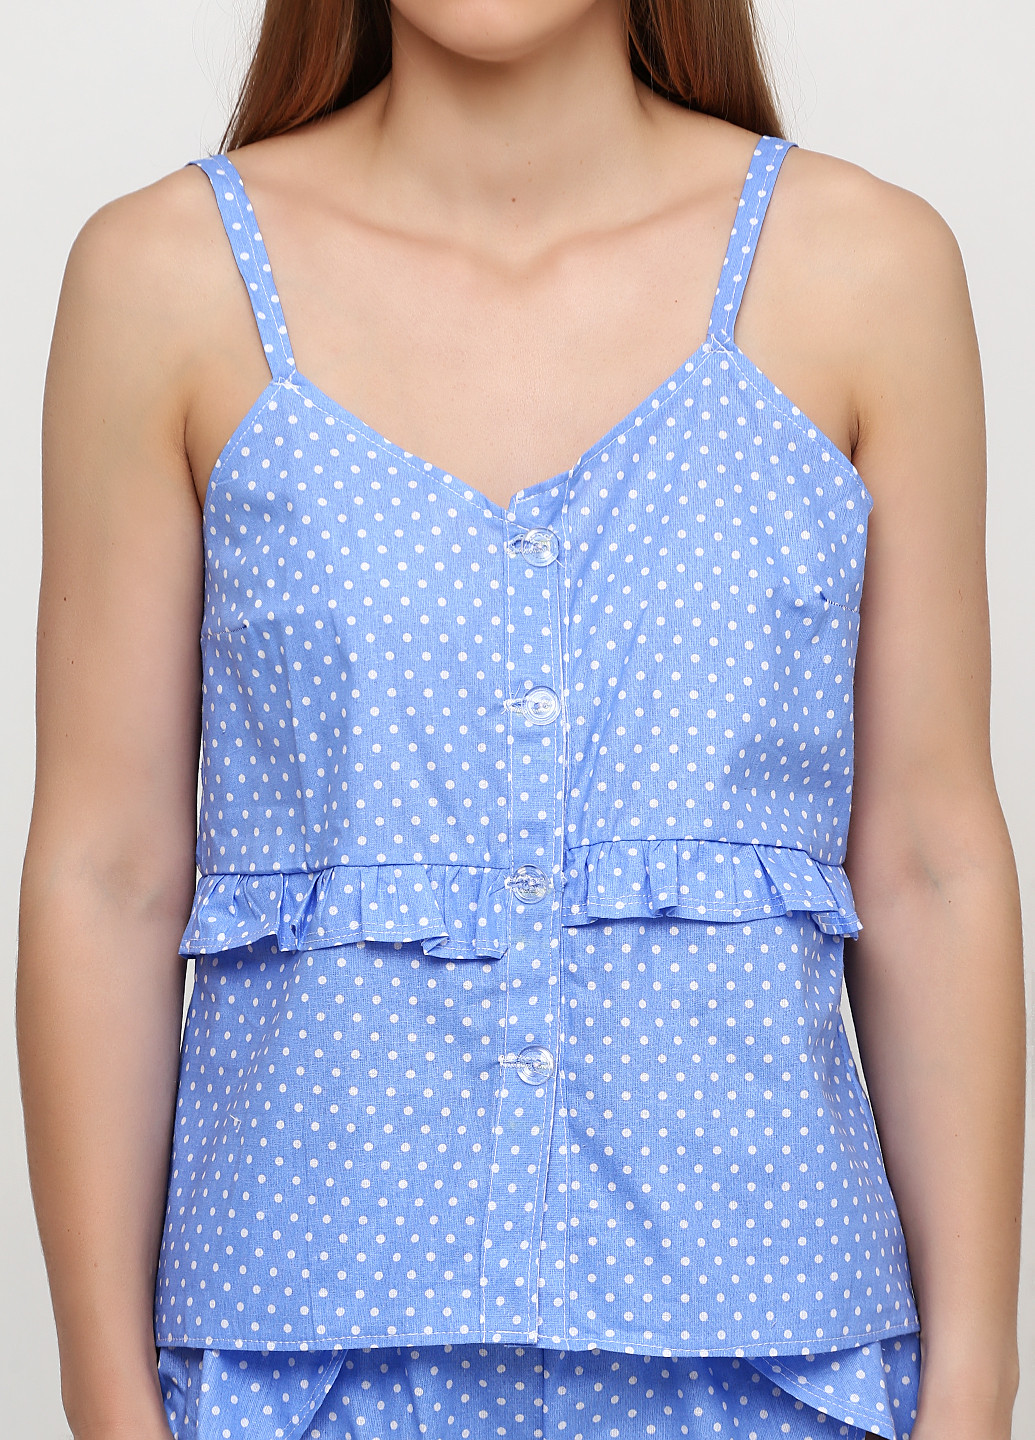 Светло-синяя всесезон пижама (топ, шорты) майка + шорты Zhmurchenko Brand